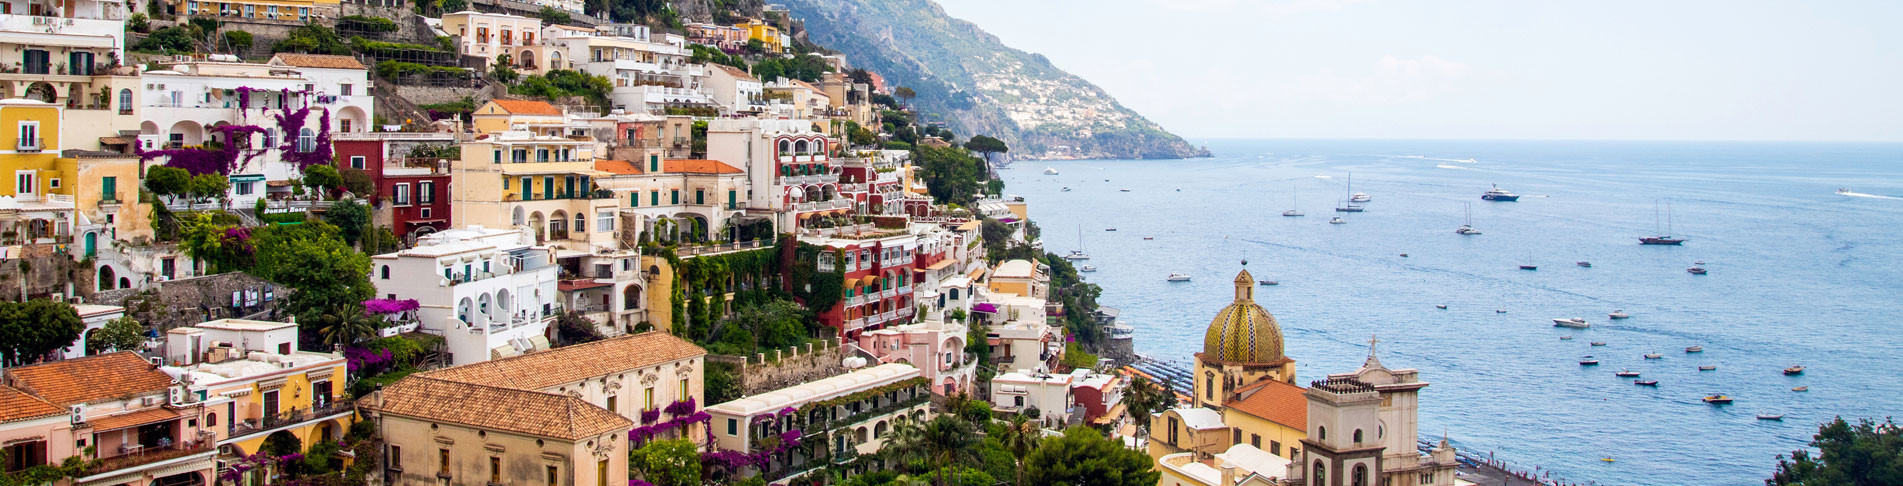 Positano in Italien bei einem All Inclusive Urlaub erkunden